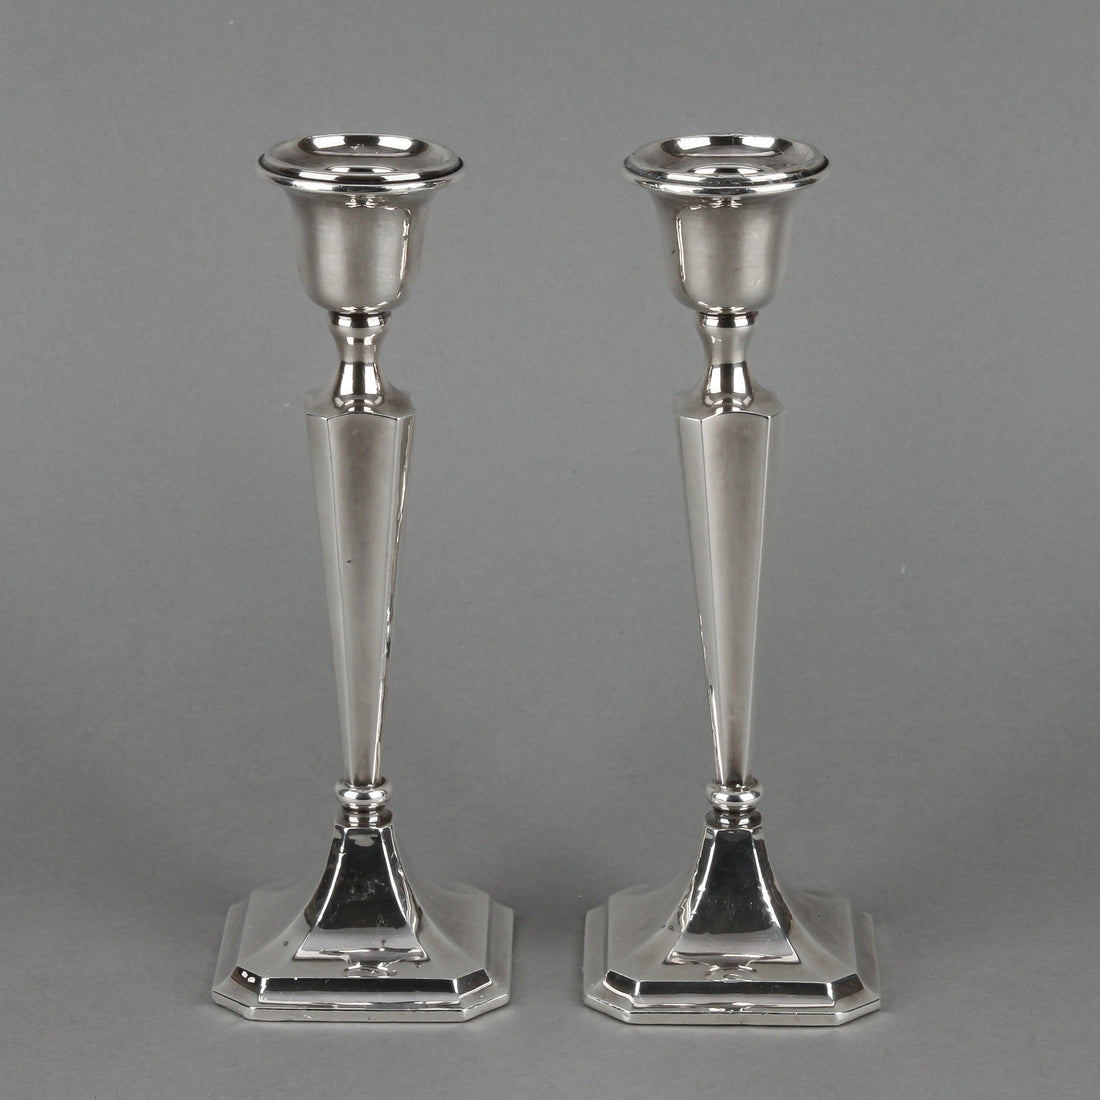 MILLER BROS. Sterling Silver Candlesticks - Set of 2